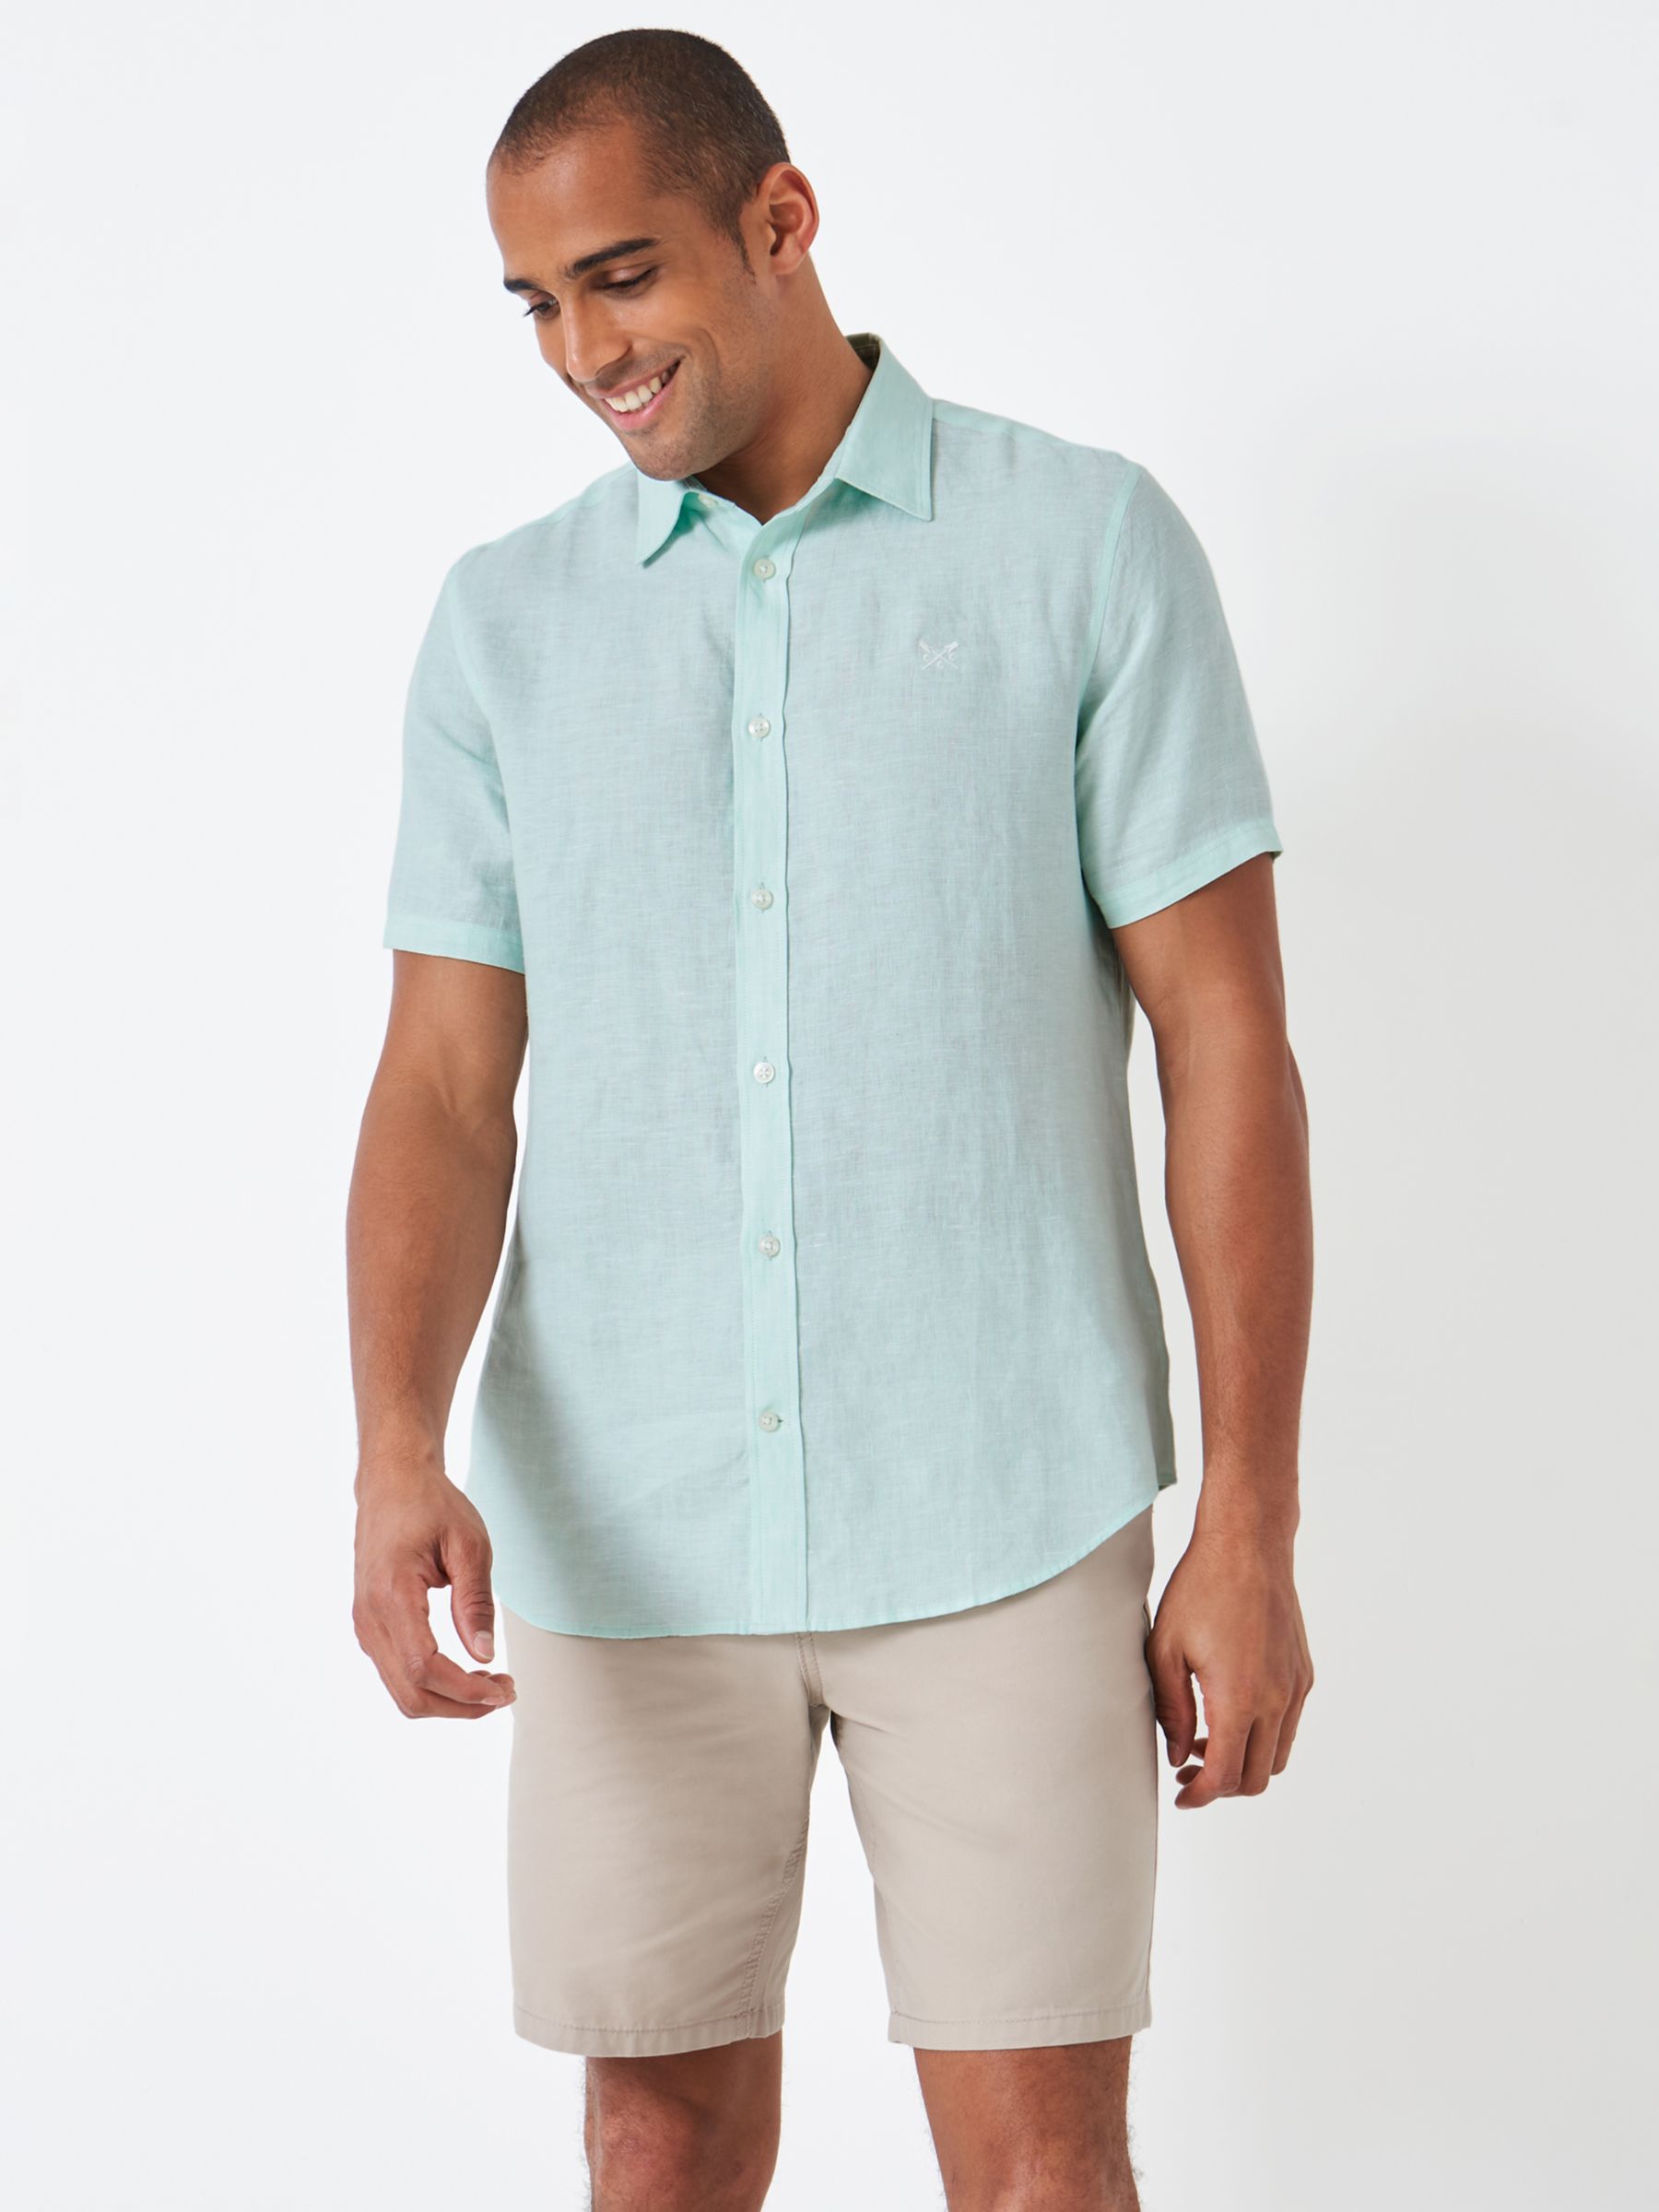 Mint Green Short Sleeve Shirt Online | bellvalefarms.com